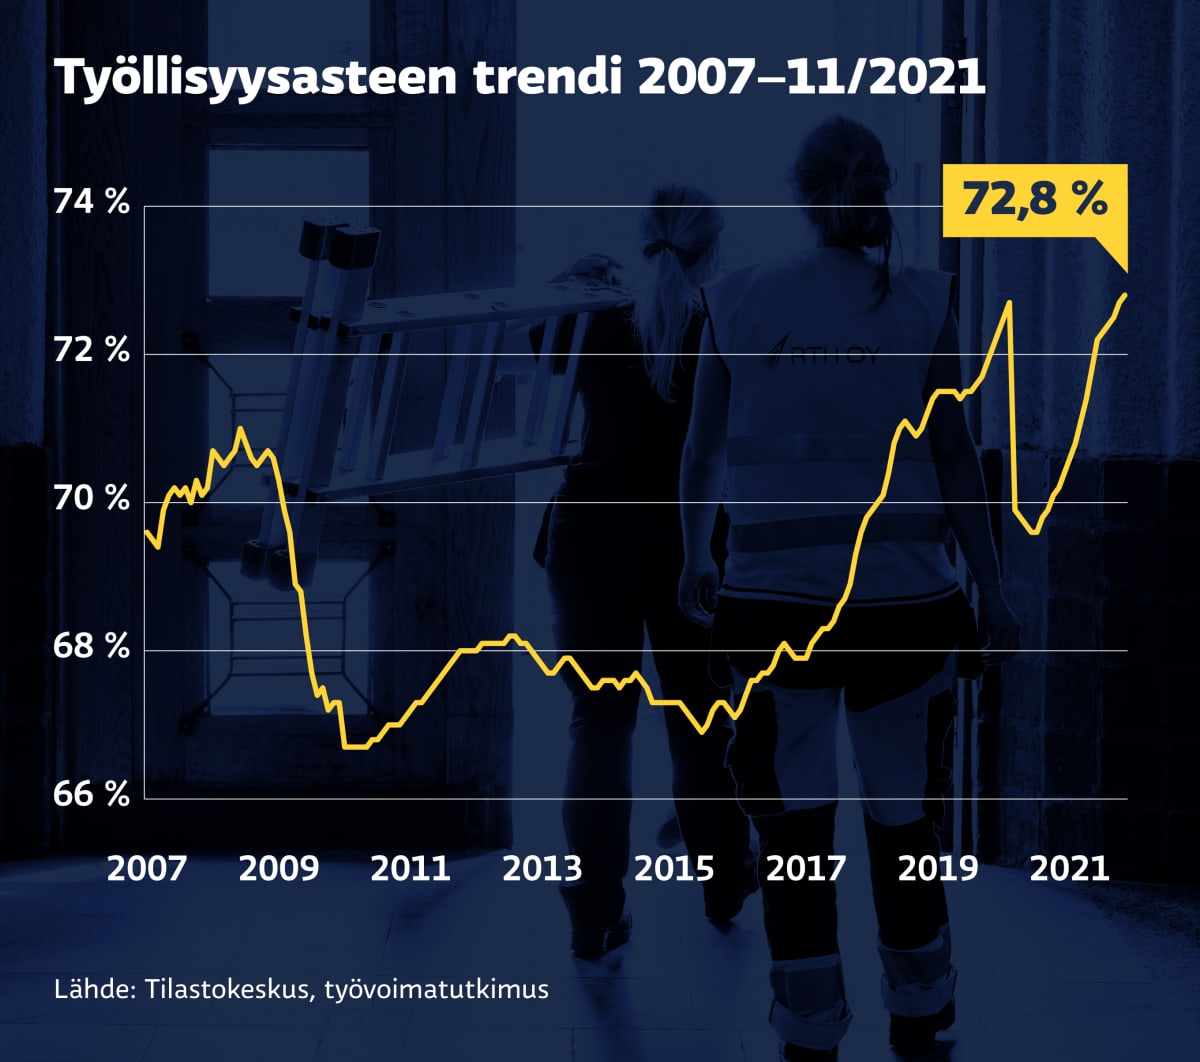 Grafiikka näyttää työllisyysasteen kehityksen kuukausittain vuoden 2007 alusta. Marraskuussa 2021 työllisyysaste oli 72,8 %.